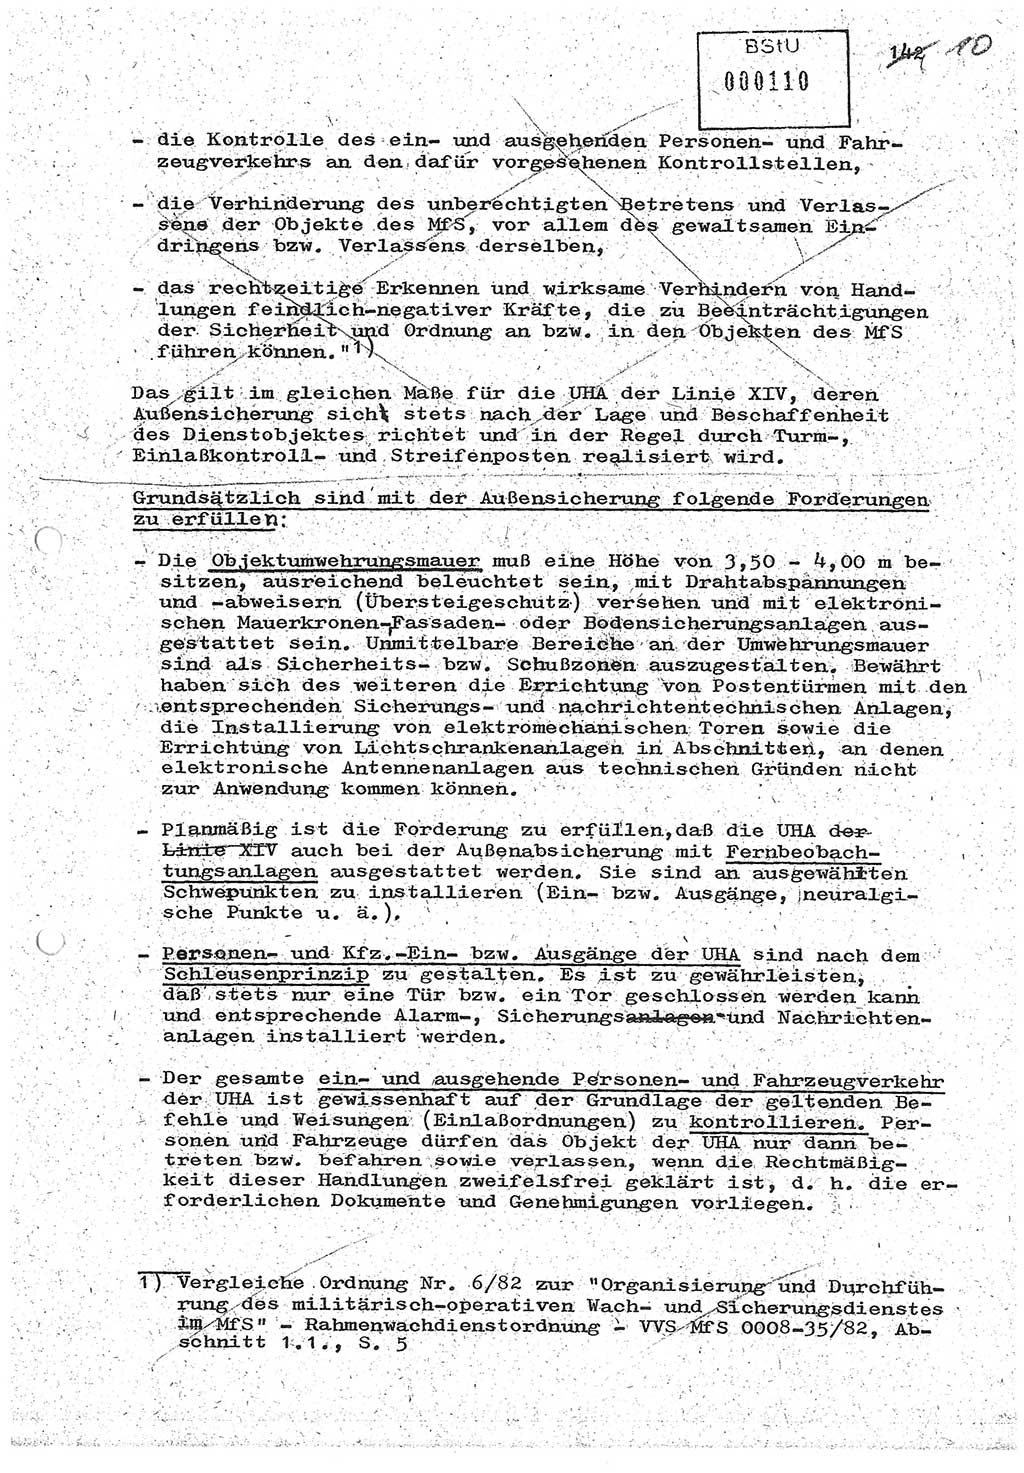 Diplomarbeit (Entwurf) Oberleutnant Peter Parke (Abt. ⅩⅣ), Ministerium für Staatssicherheit (MfS) [Deutsche Demokratische Republik (DDR)], Juristische Hochschule (JHS), Geheime Verschlußsache (GVS) o001-98/86, Potsdam 1986, Seite 110 (Dipl.-Arb. MfS DDR JHS GVS o001-98/86 1986, S. 110)